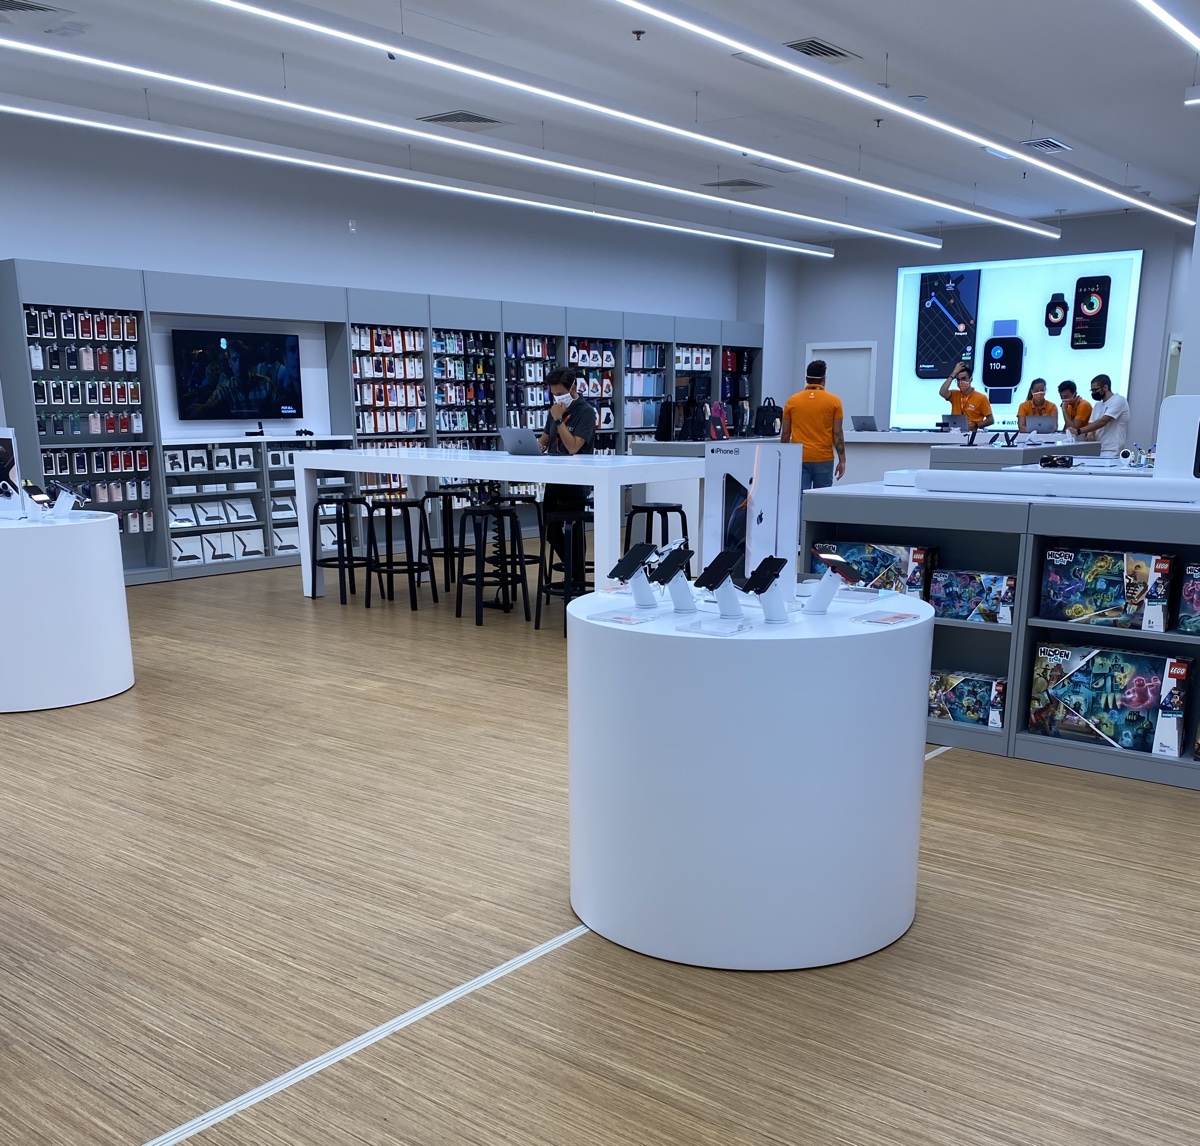 Juice Verona è il nuovo negozio Apple Premium Reseller e Centro Assistenza Autorizzato Apple